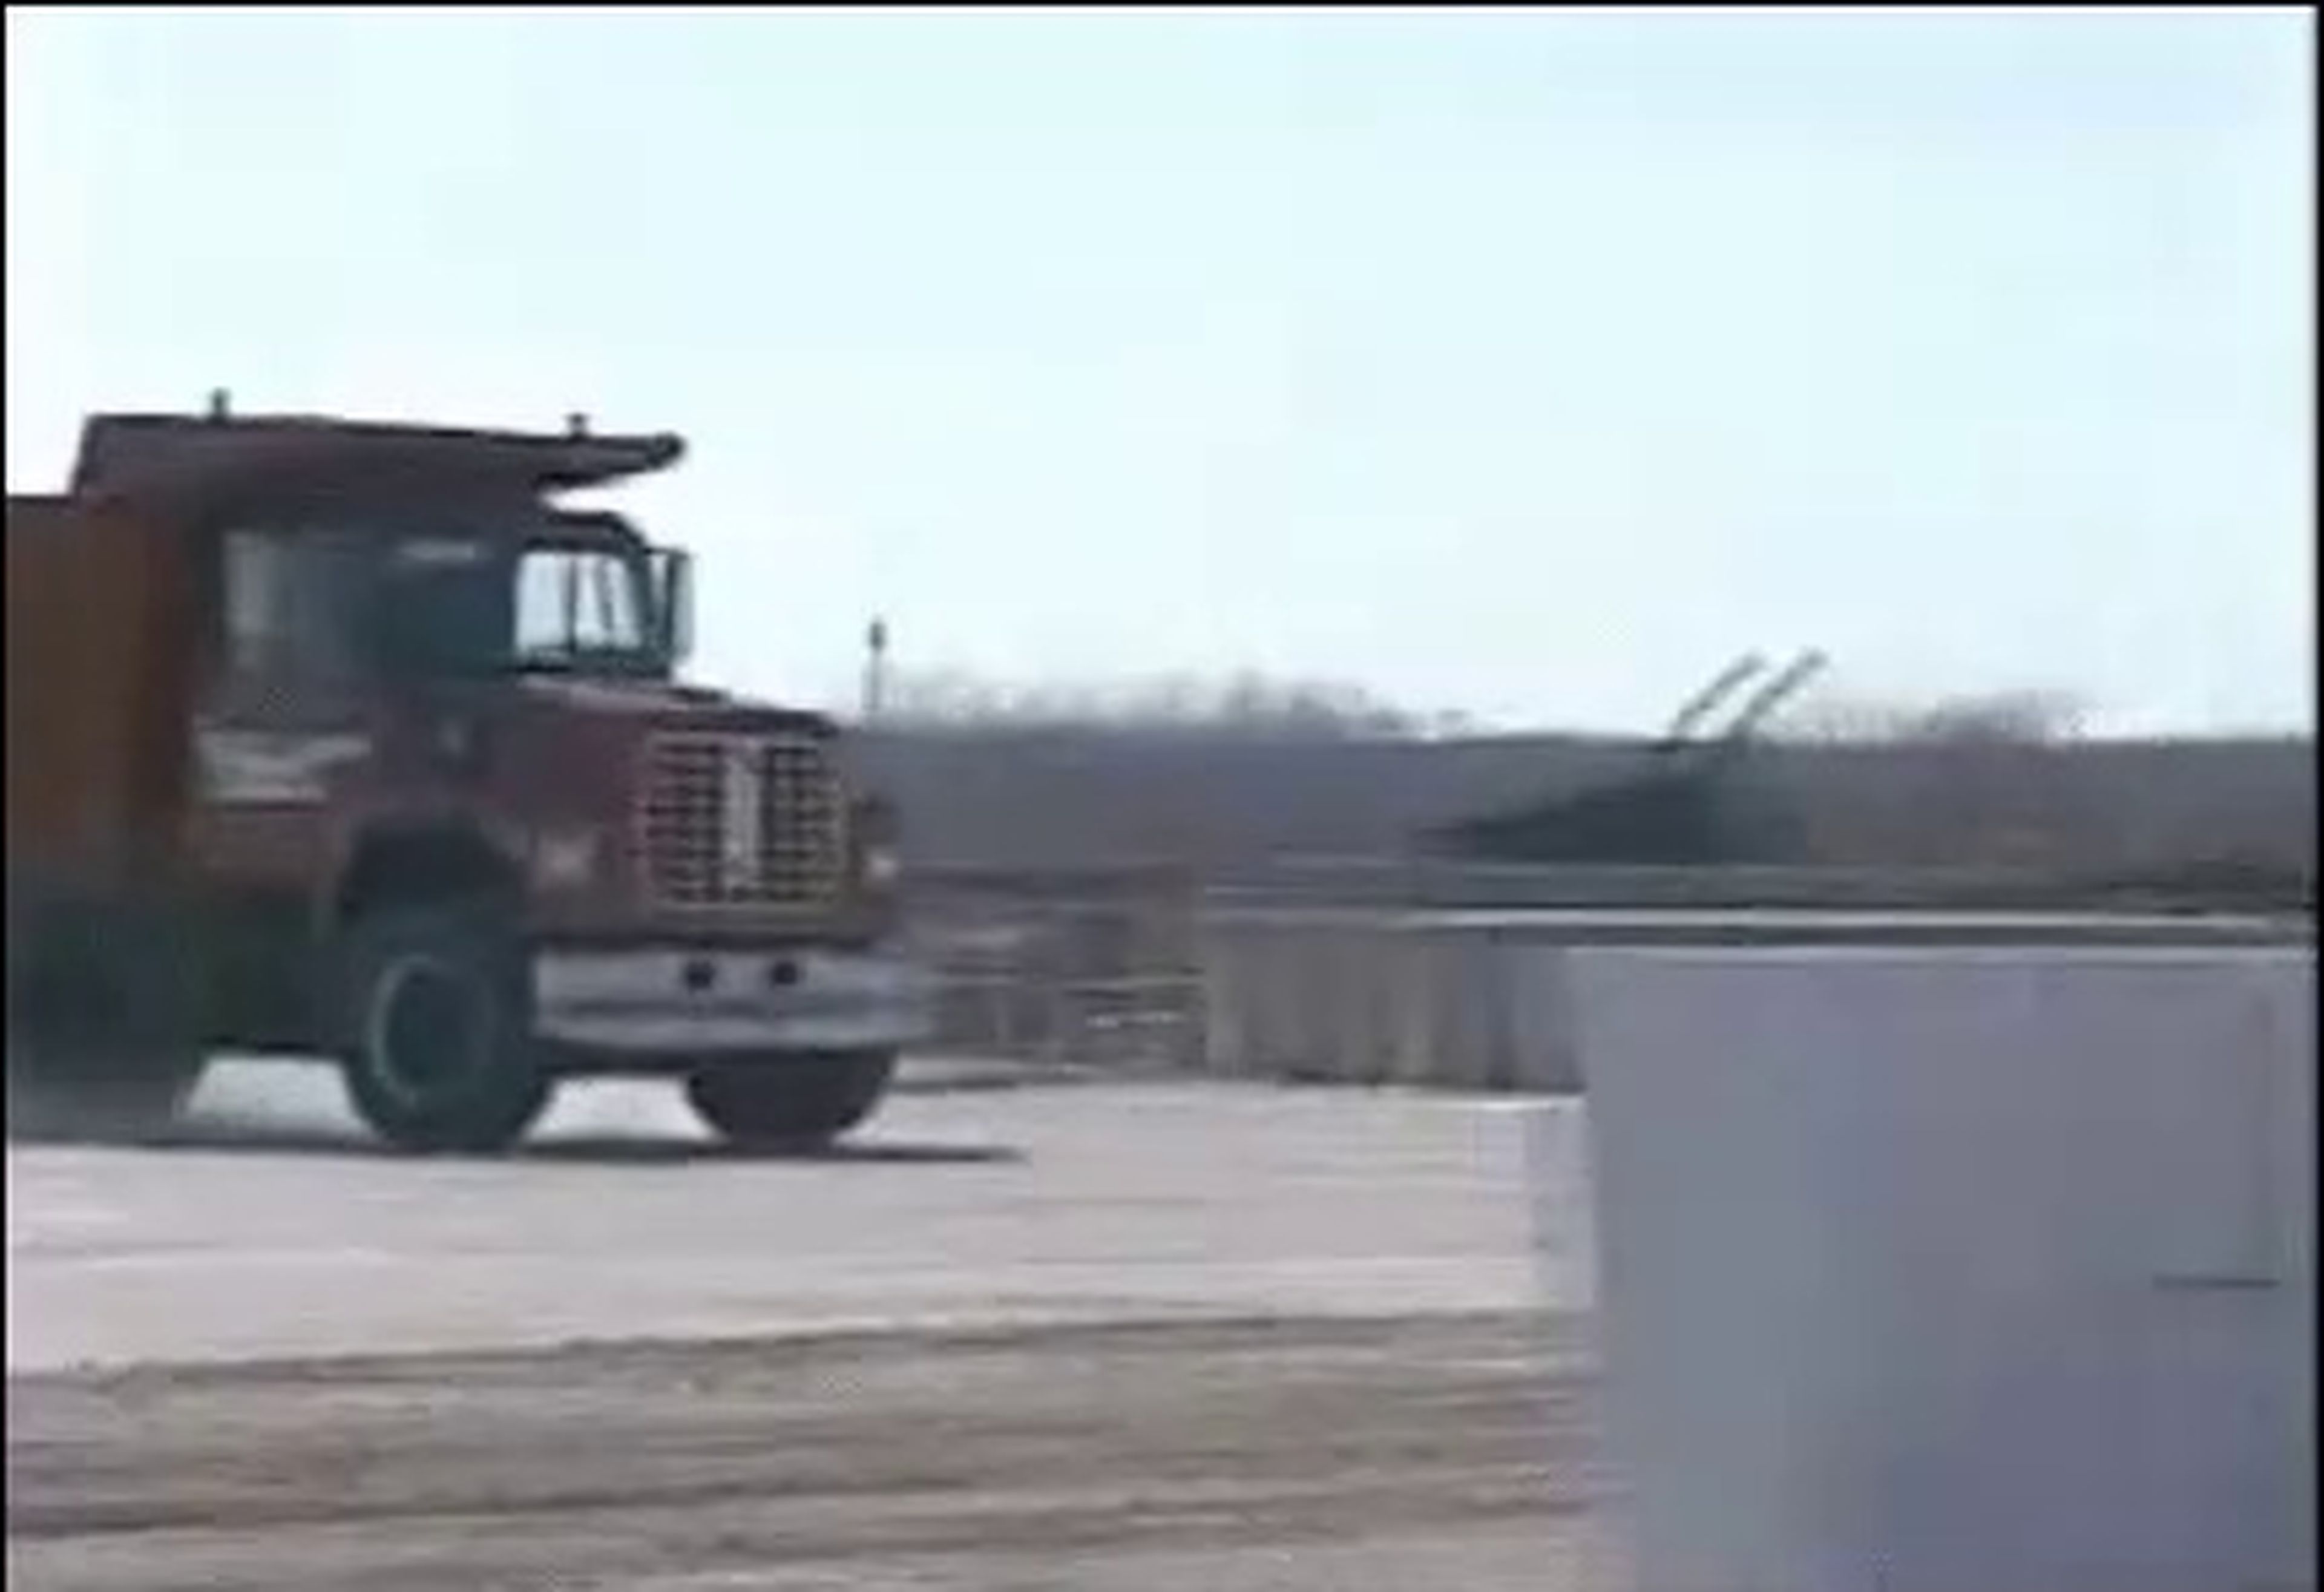 VÍDEO: este debe ser de los primeros crash test con un camión, ¡espectacular!